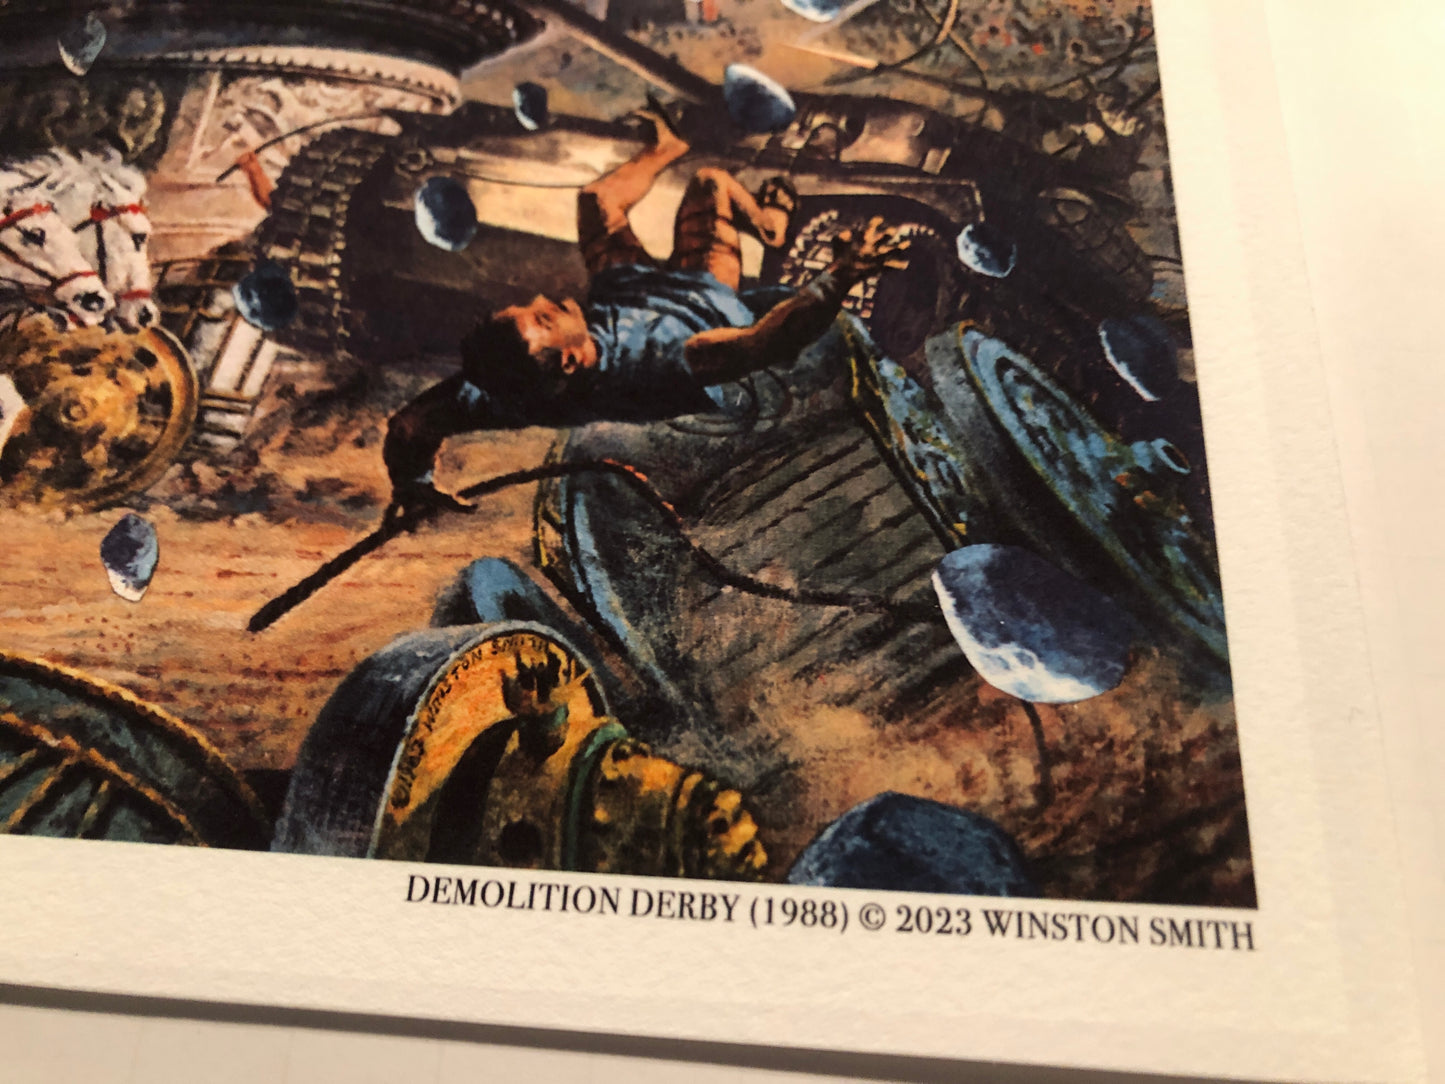 Winston Smith “Demolition Derby” Print